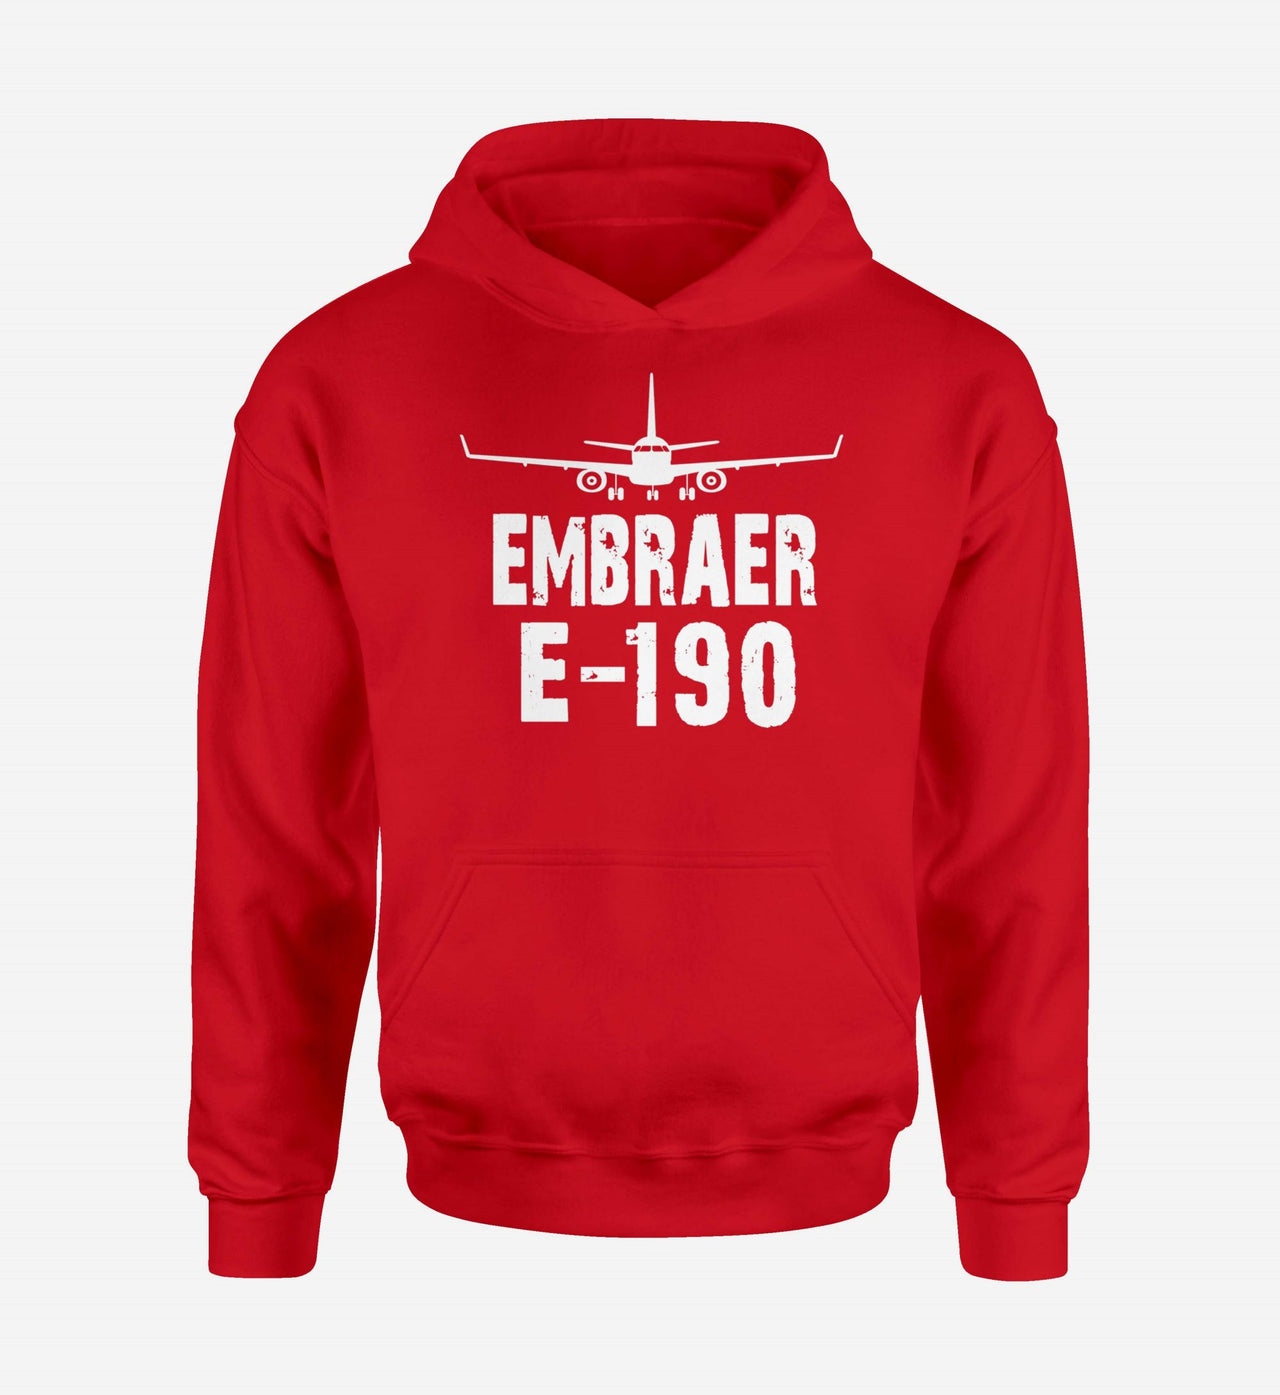 Embraer E-190 & Plane Designed Hoodies